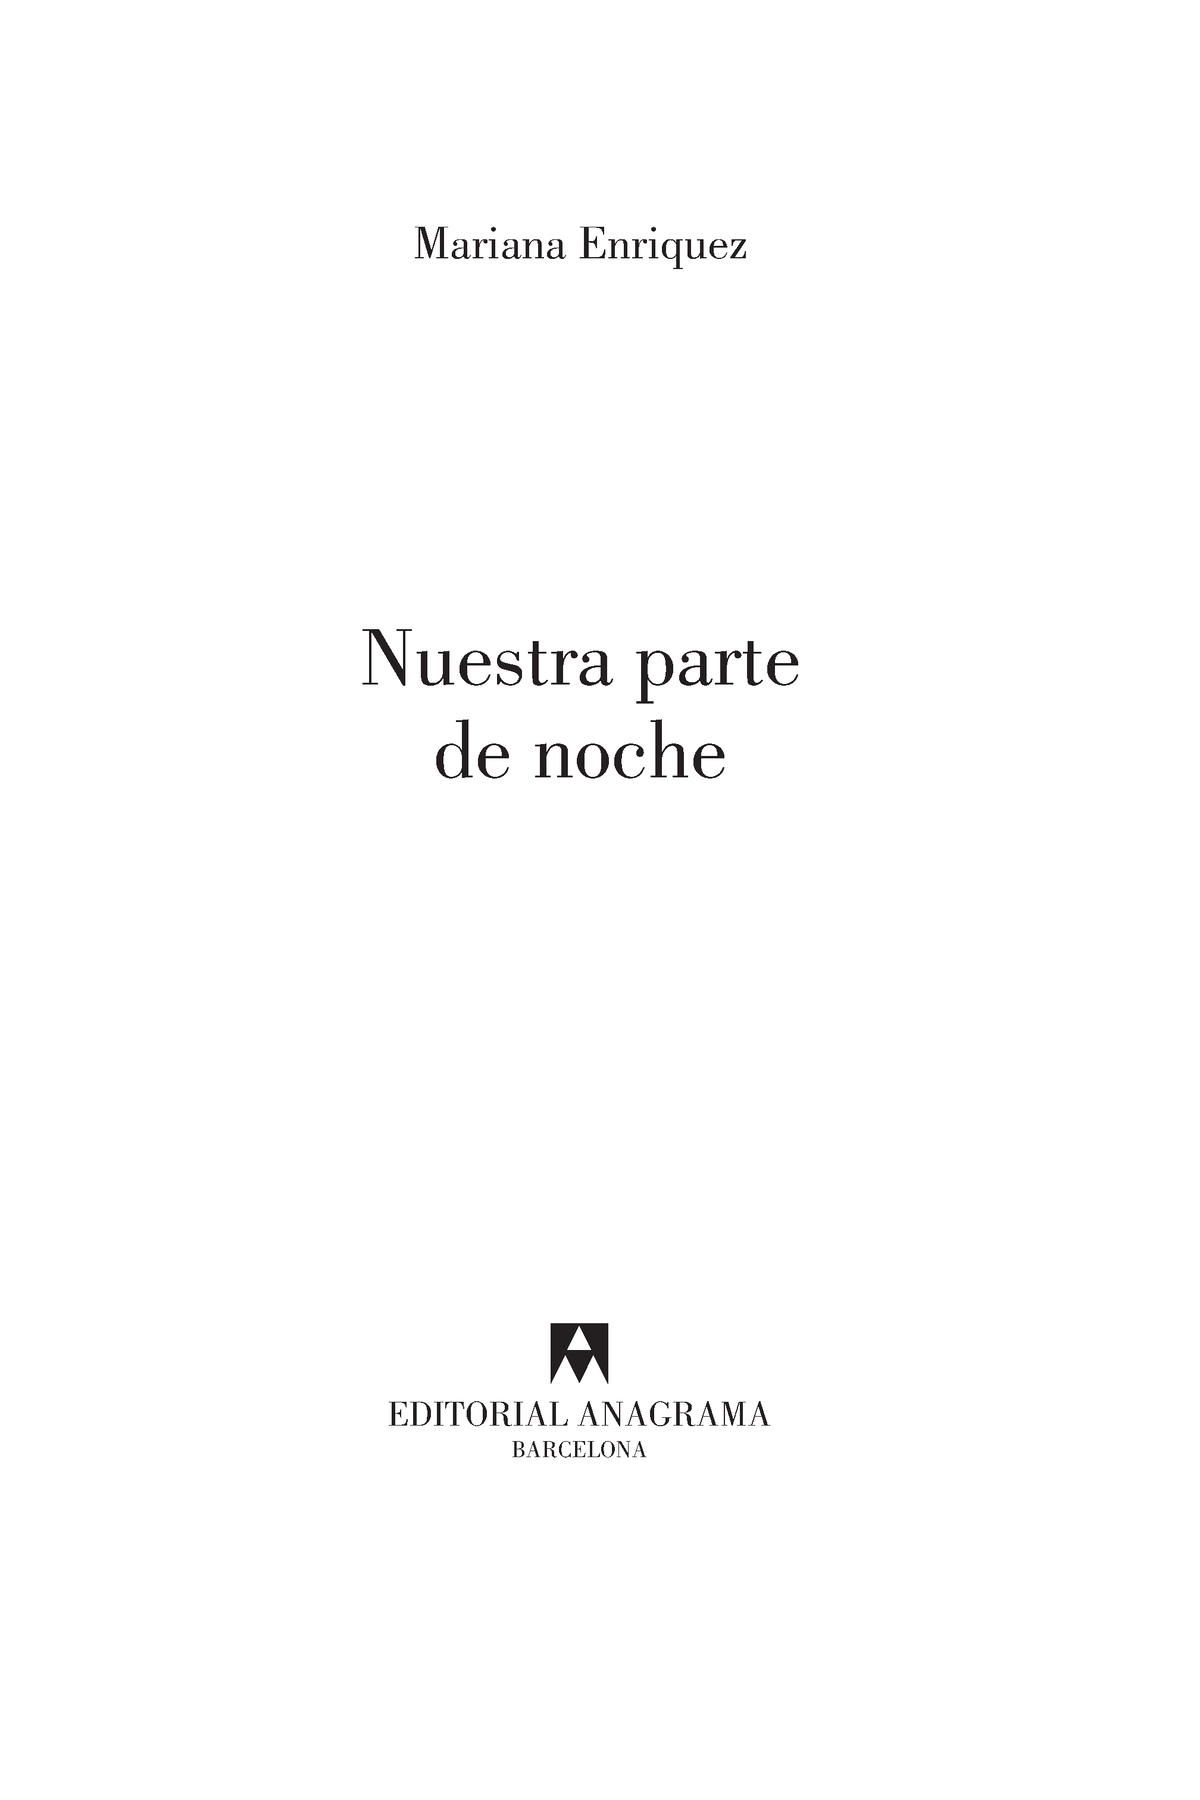 Nuestra parte de noche, de Mariana Enríquez (fragmento)